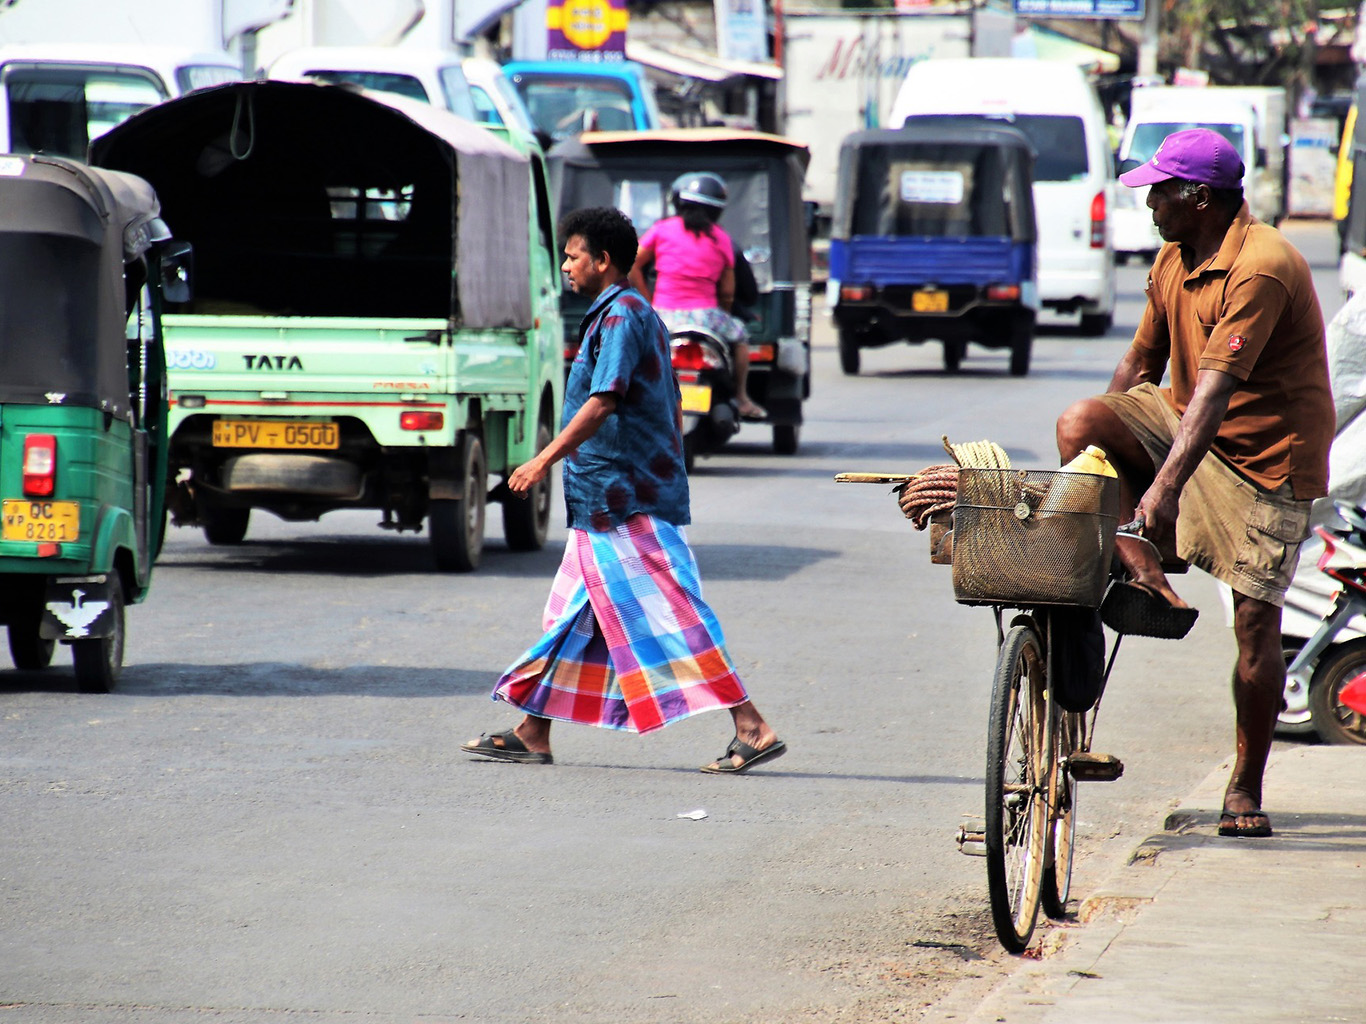 Provoz na Srí Lance působí chaotickým dojmem, má ale svá pravidla